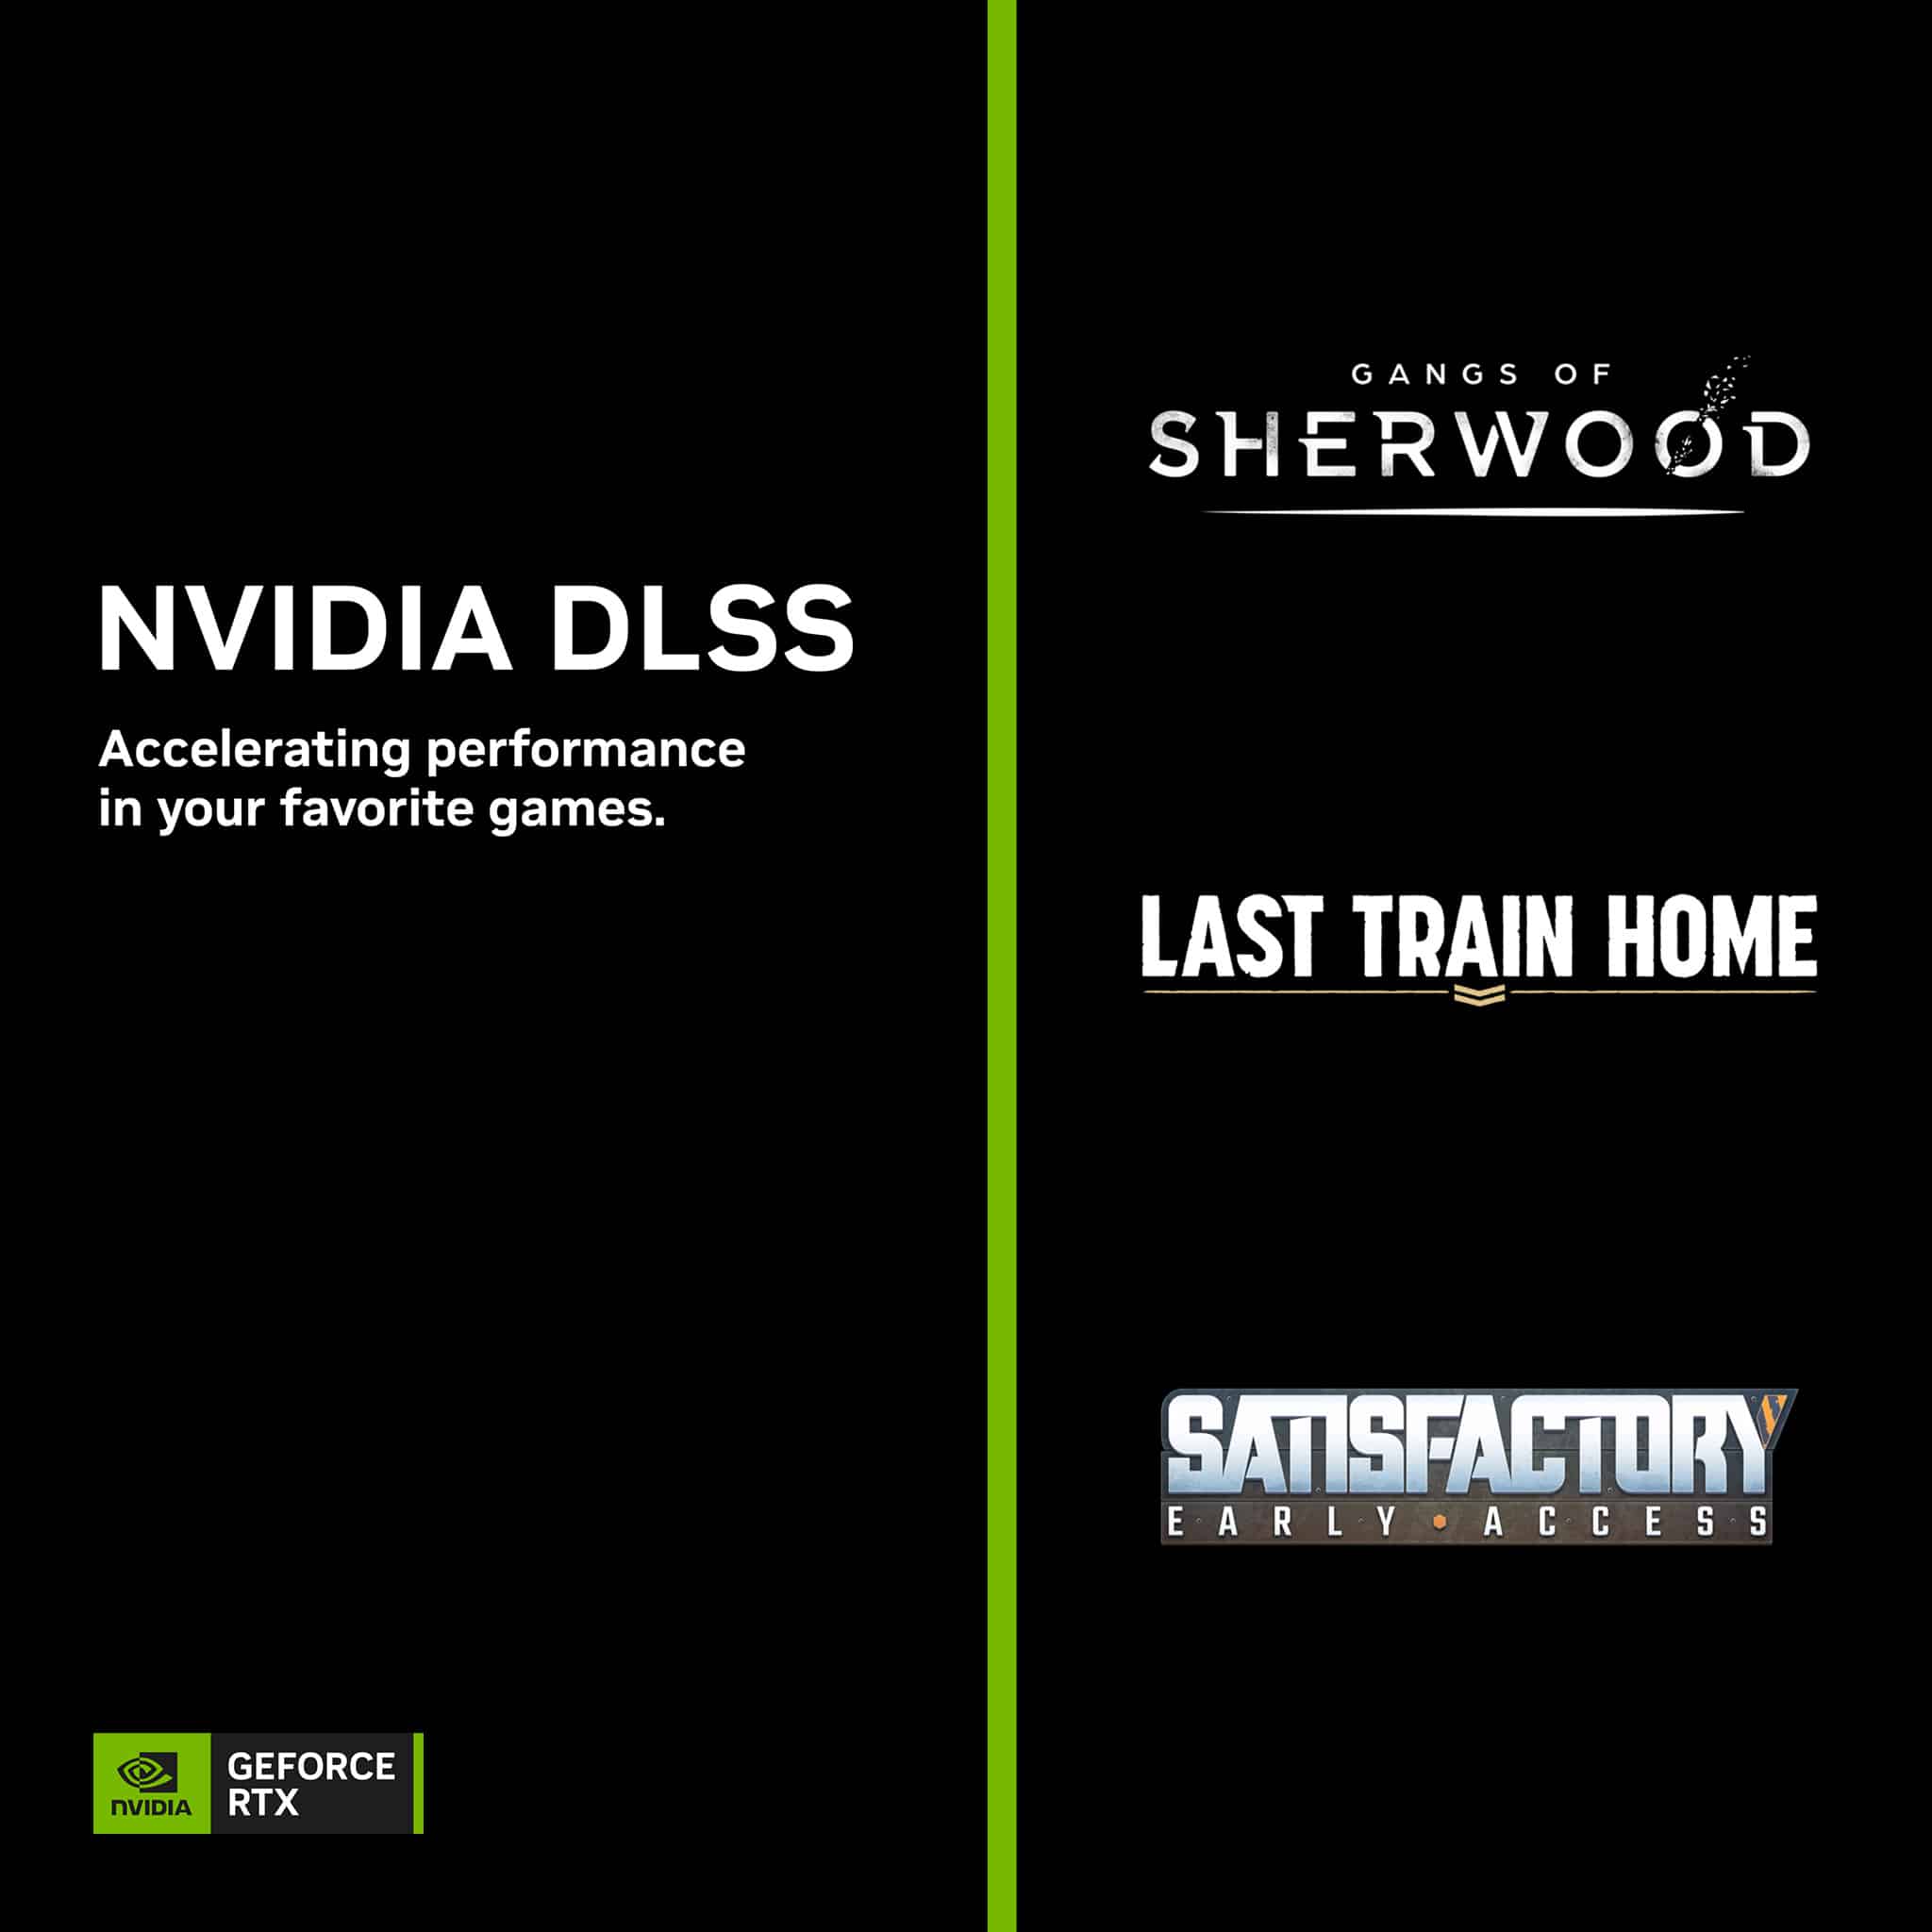 【NVIDIA-新聞照片一】《Gangs-of-Sherwood》、《返家末班車》和《滿意》3款遊戲將在本周支援DLSS。